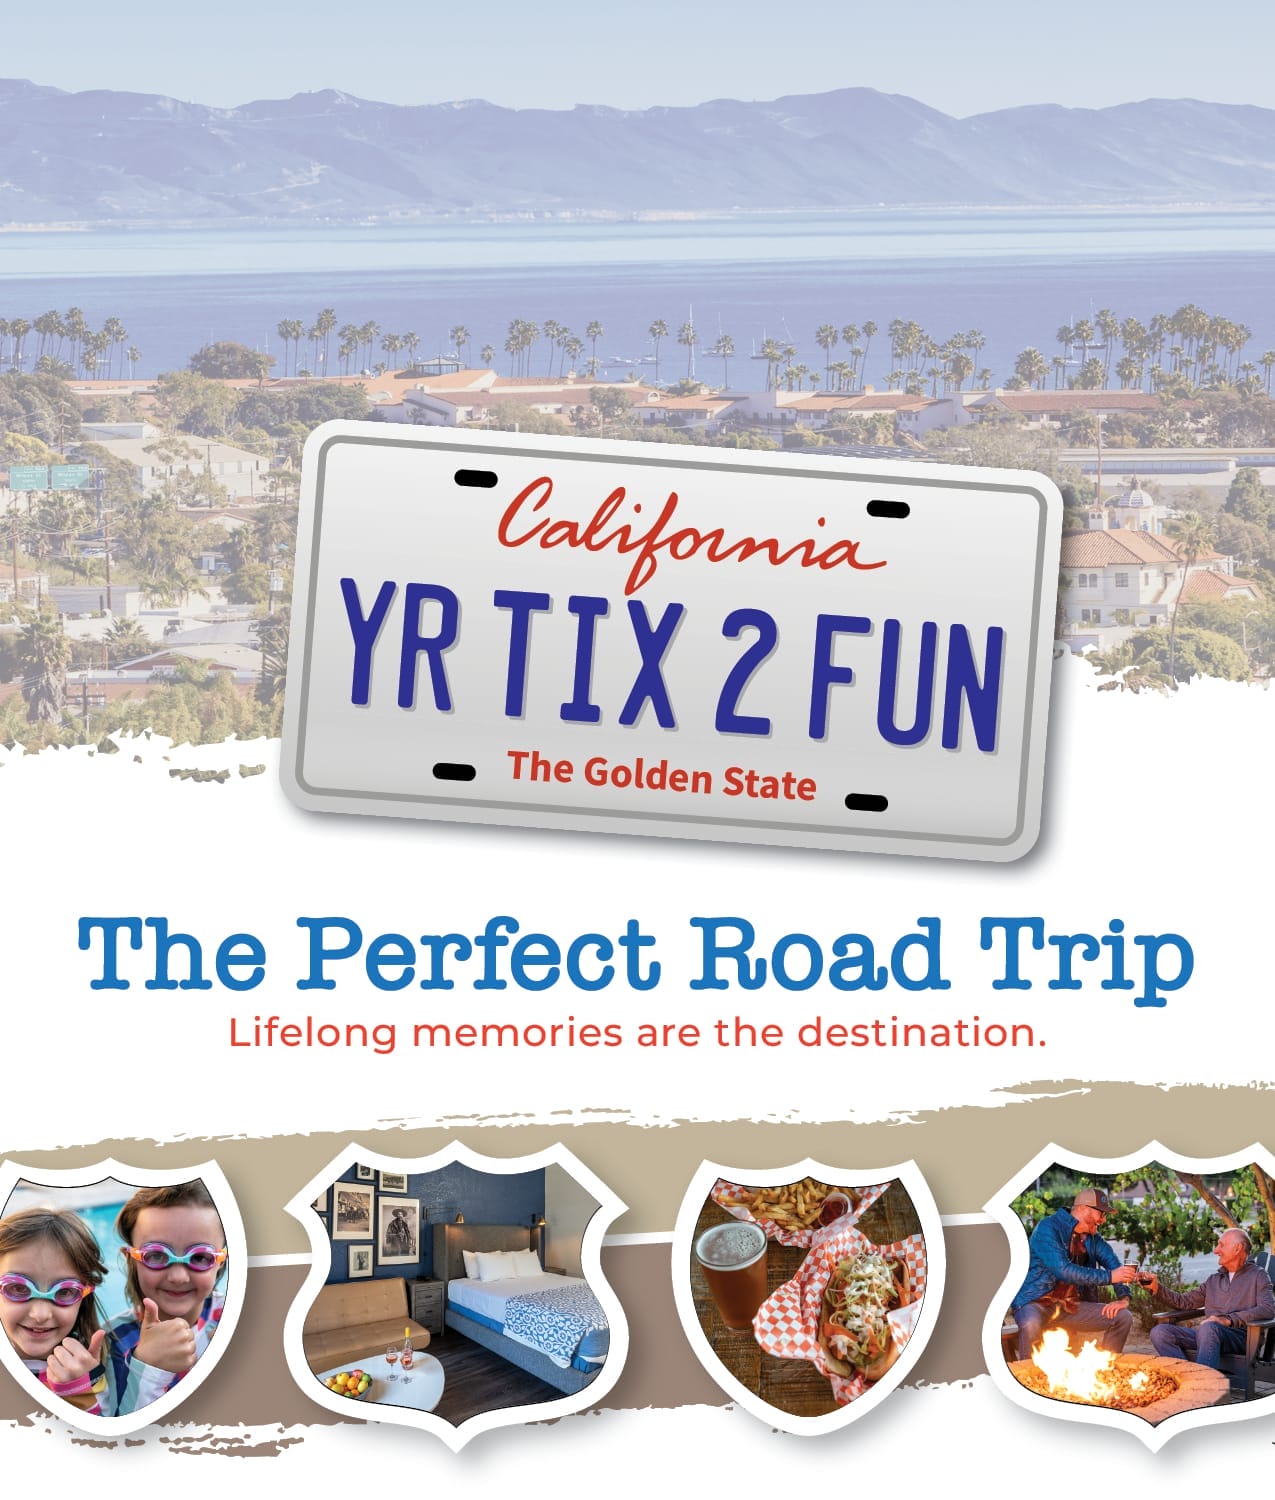 The Perfect Road Trip – Santa Barbara’s Scenic Coast